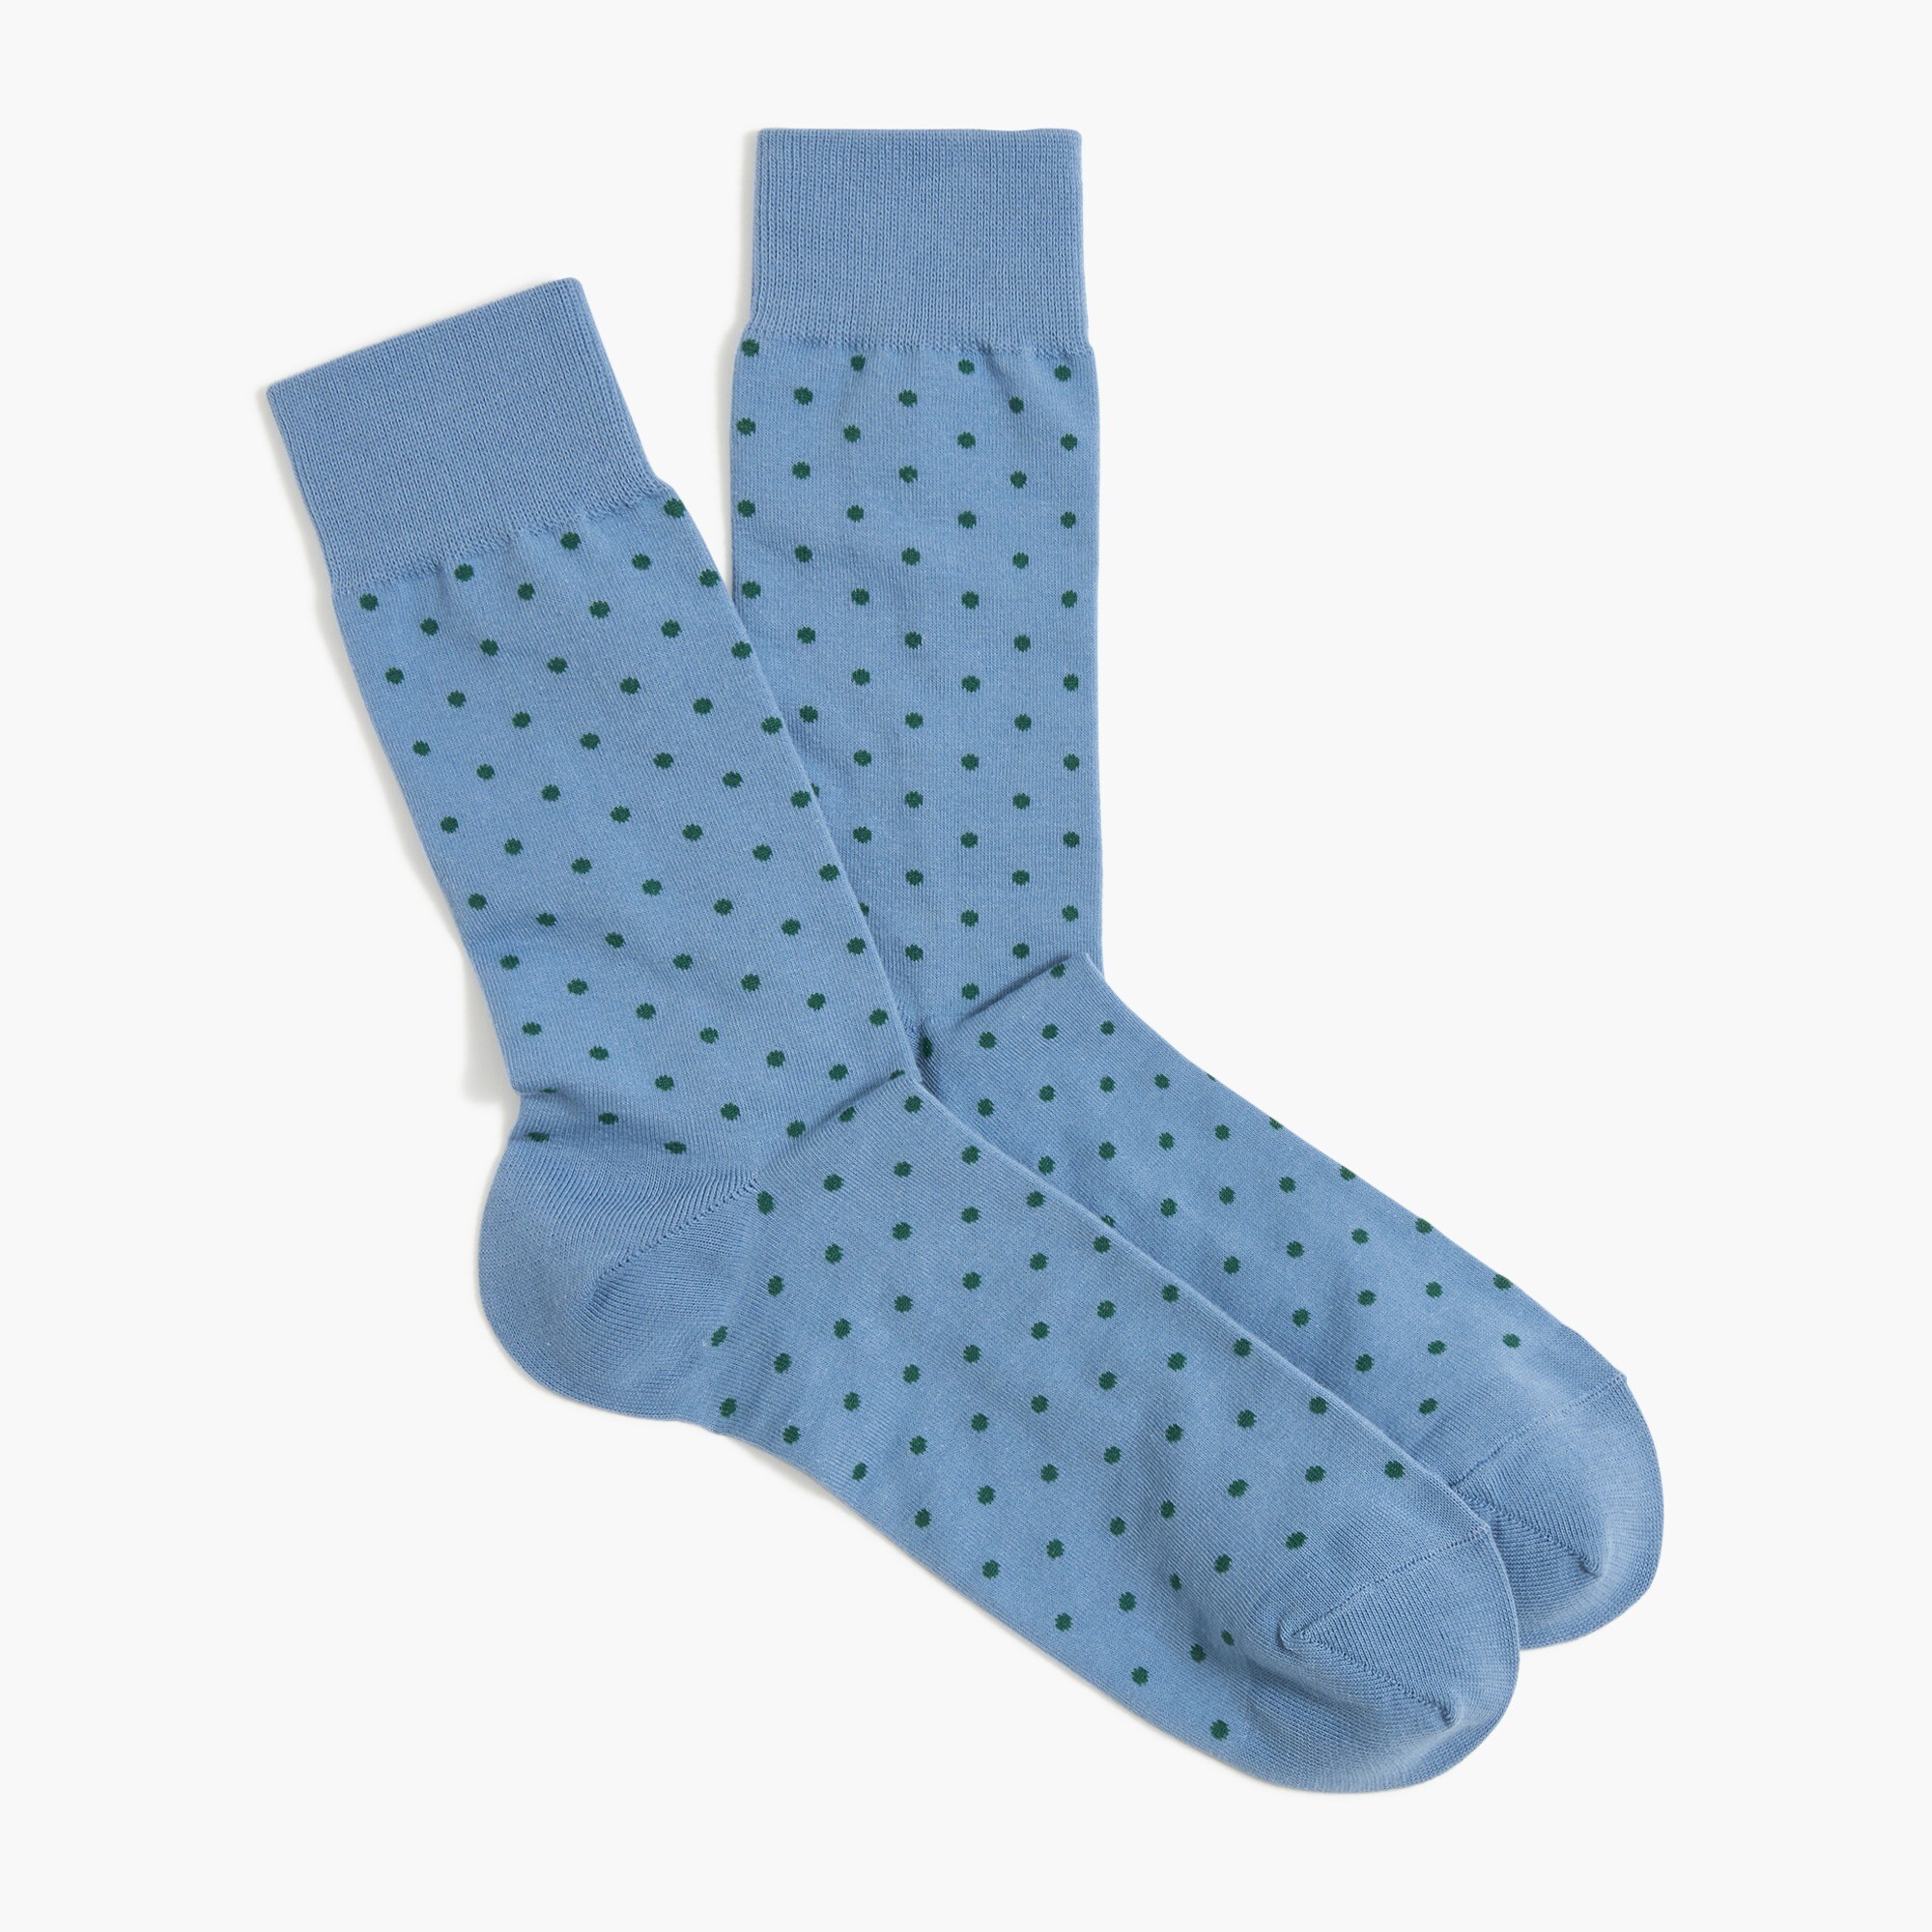  Polka-dot socks